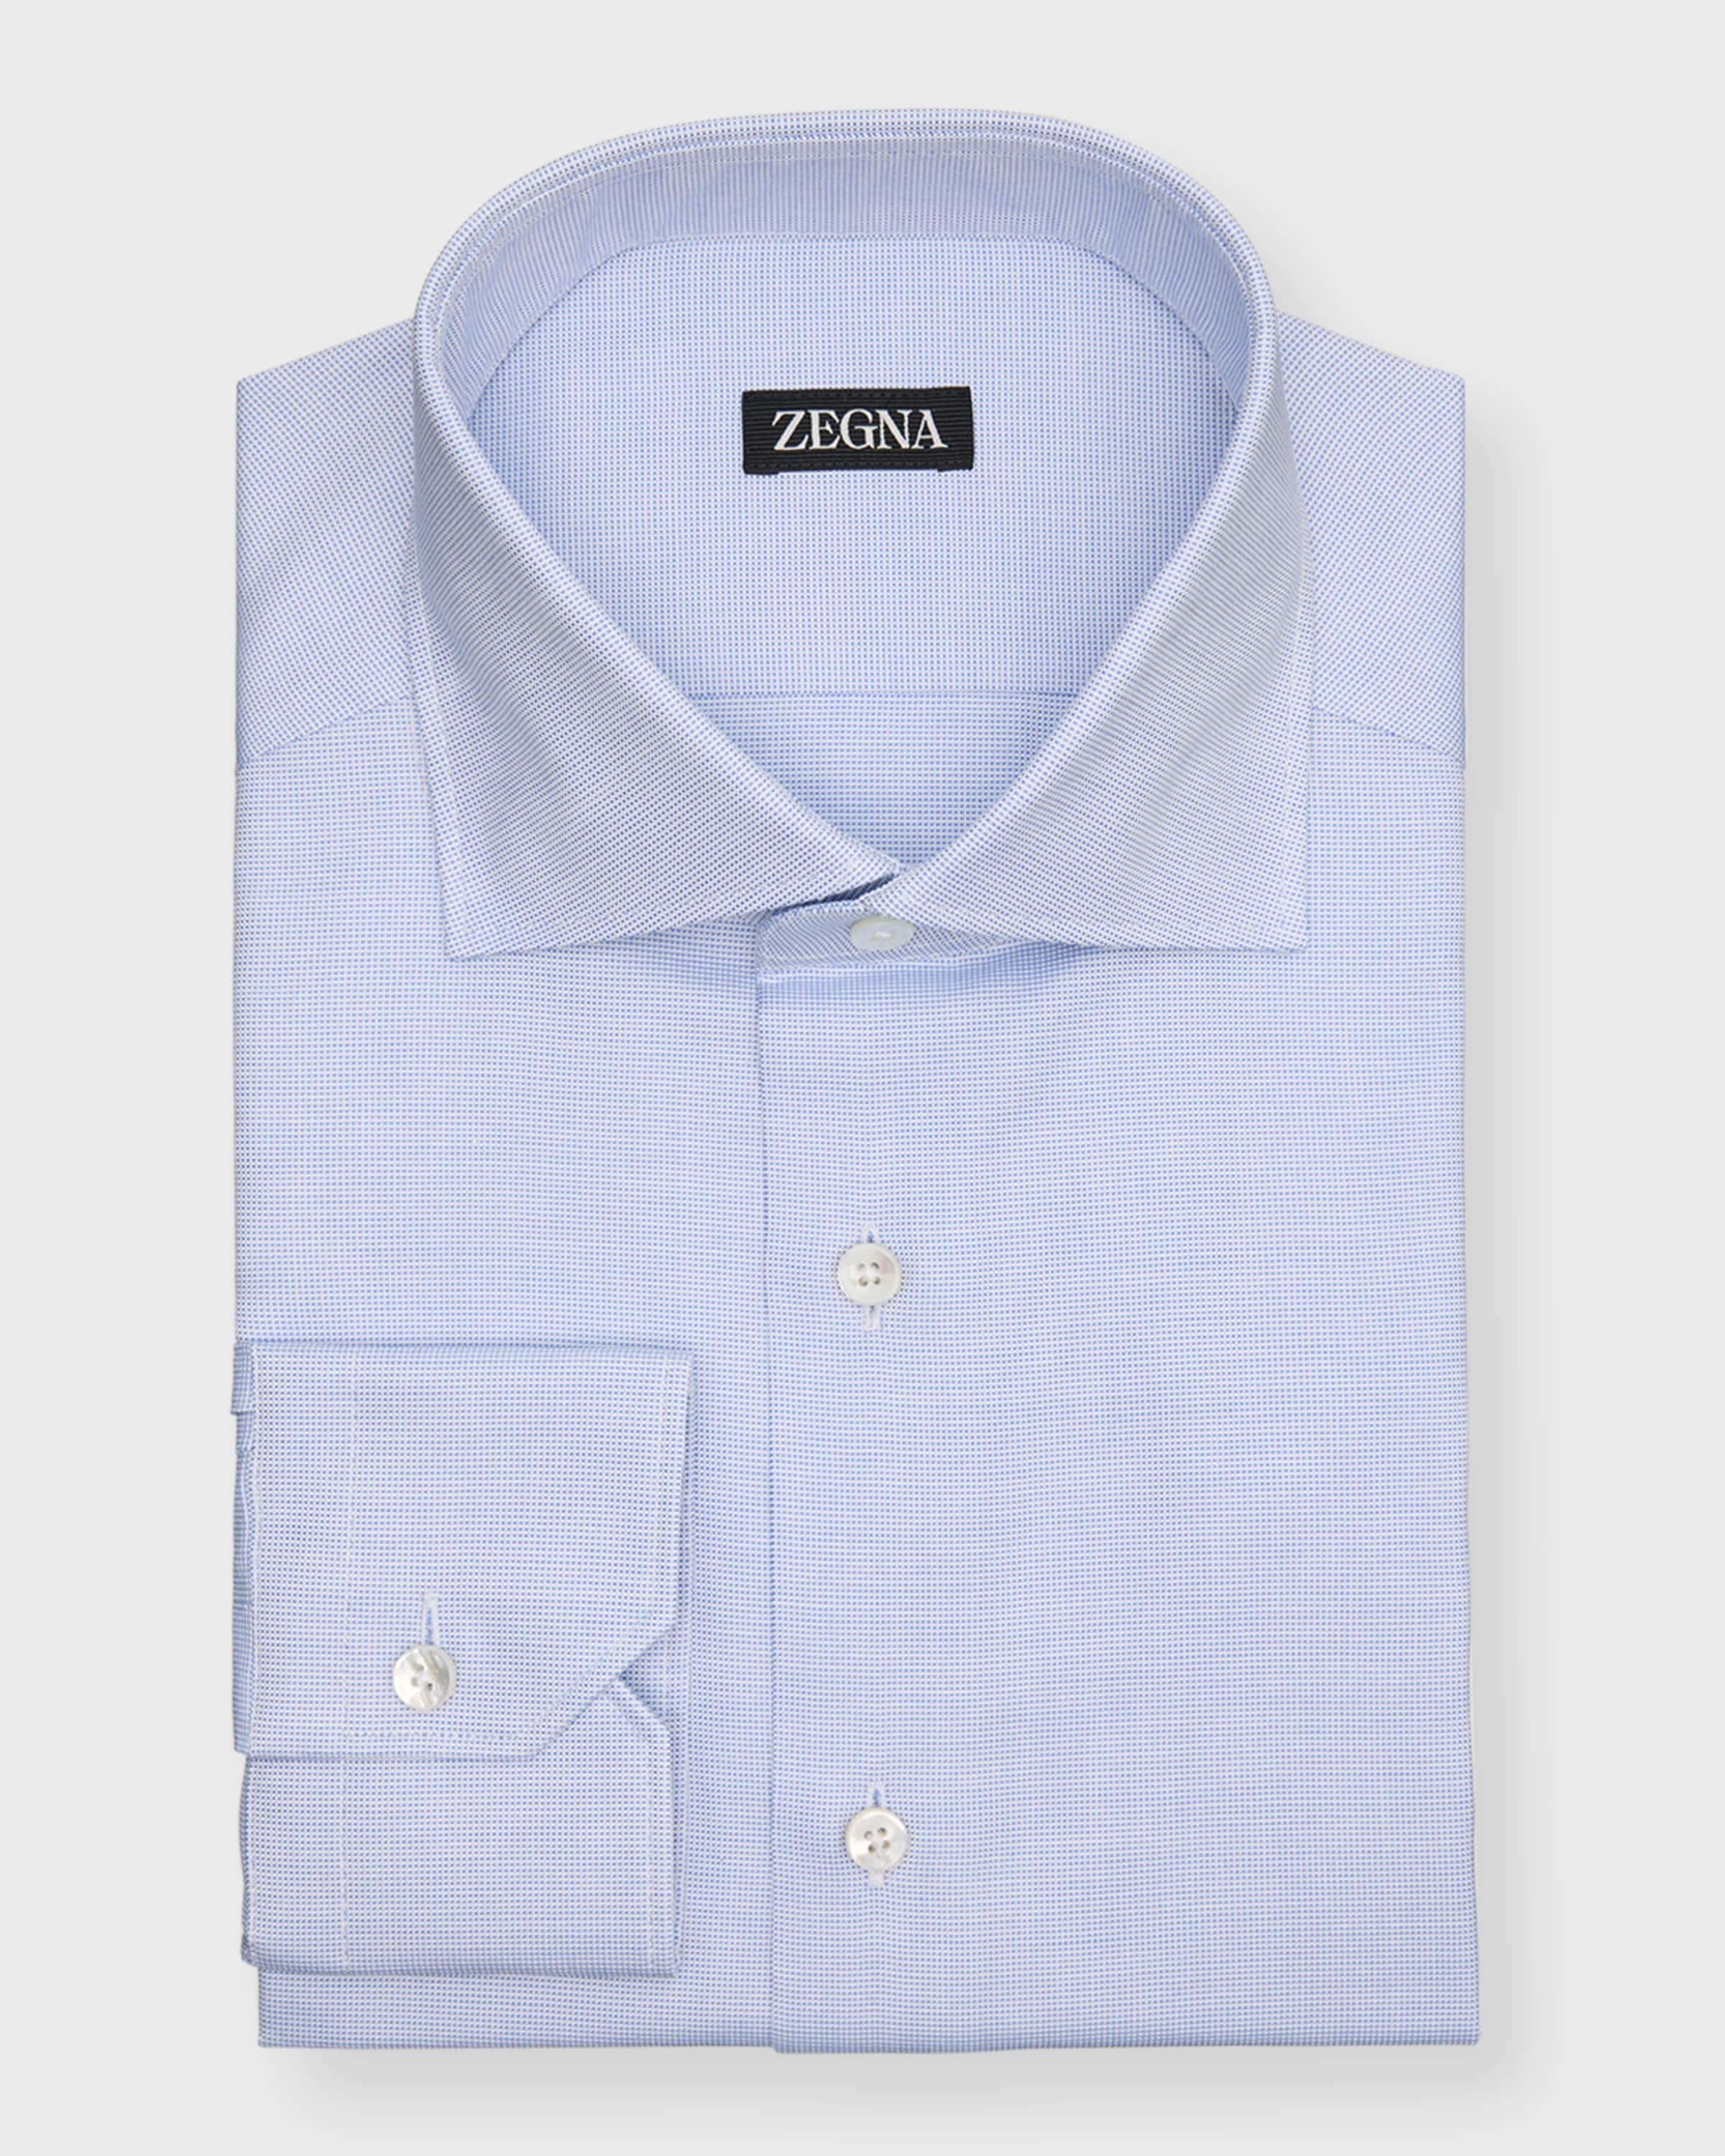 Men's Cotton Micro-Structure Dress Shirt - 2